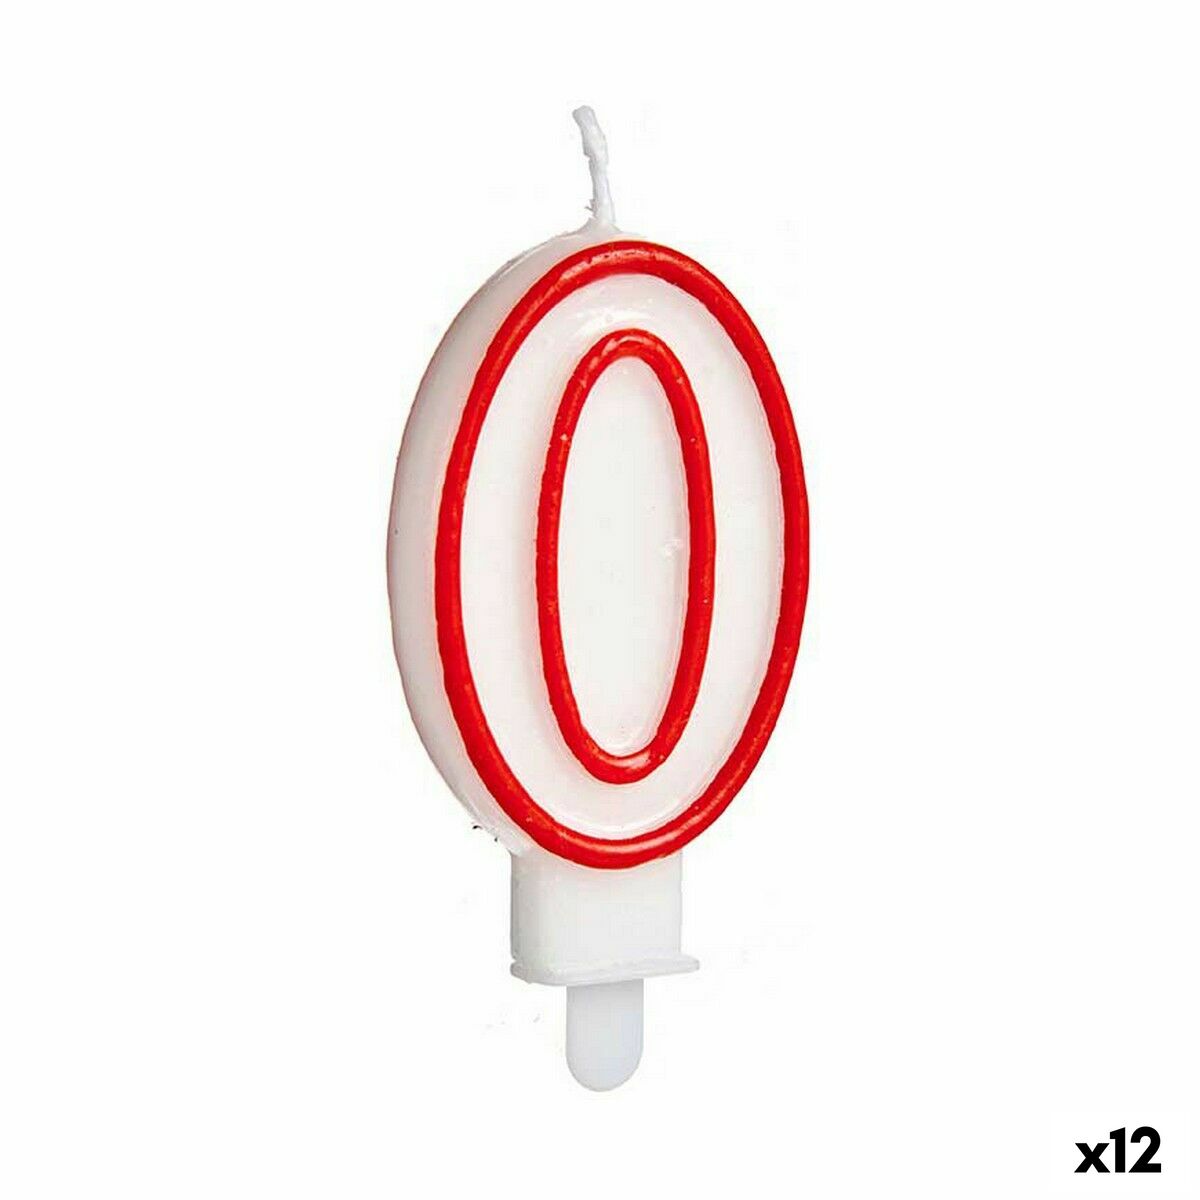 Candela Rosso Bianco Compleanno Numeri 0 (12 Unità)